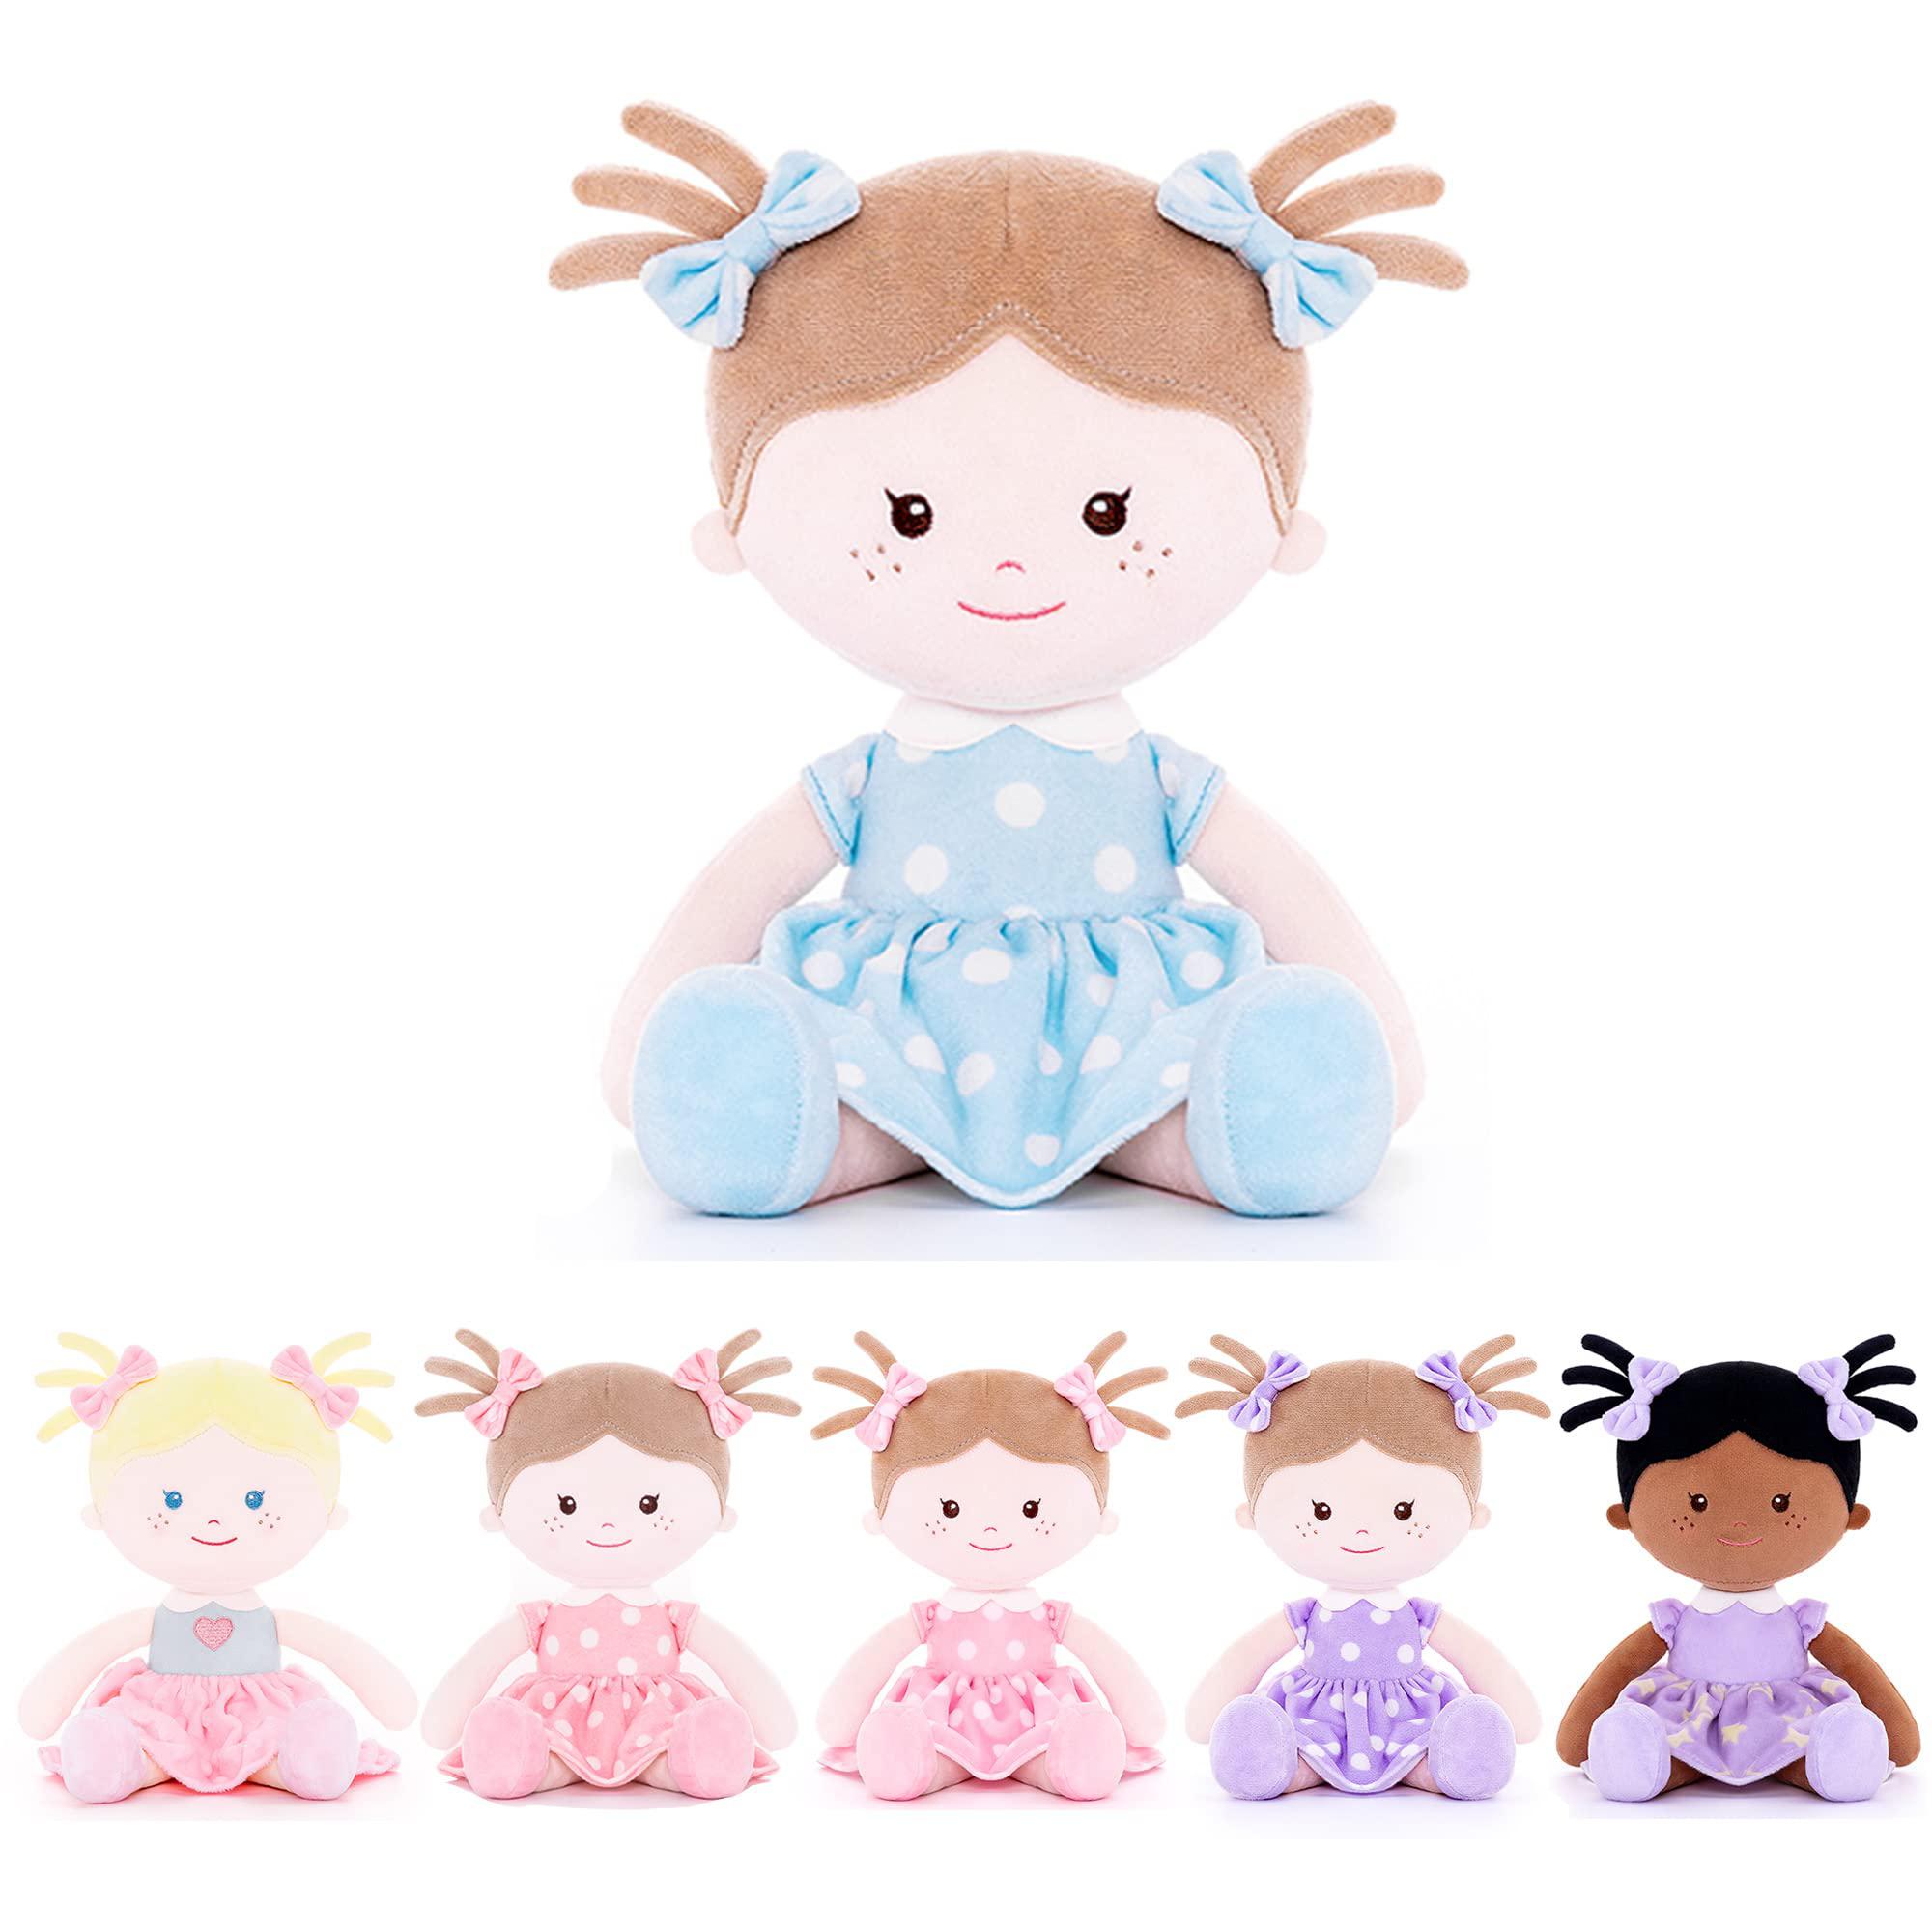 onetoo soft baby doll for girls first baby doll sleeping cuddle buddy doll plush rag doll wear blue polka dot dress14